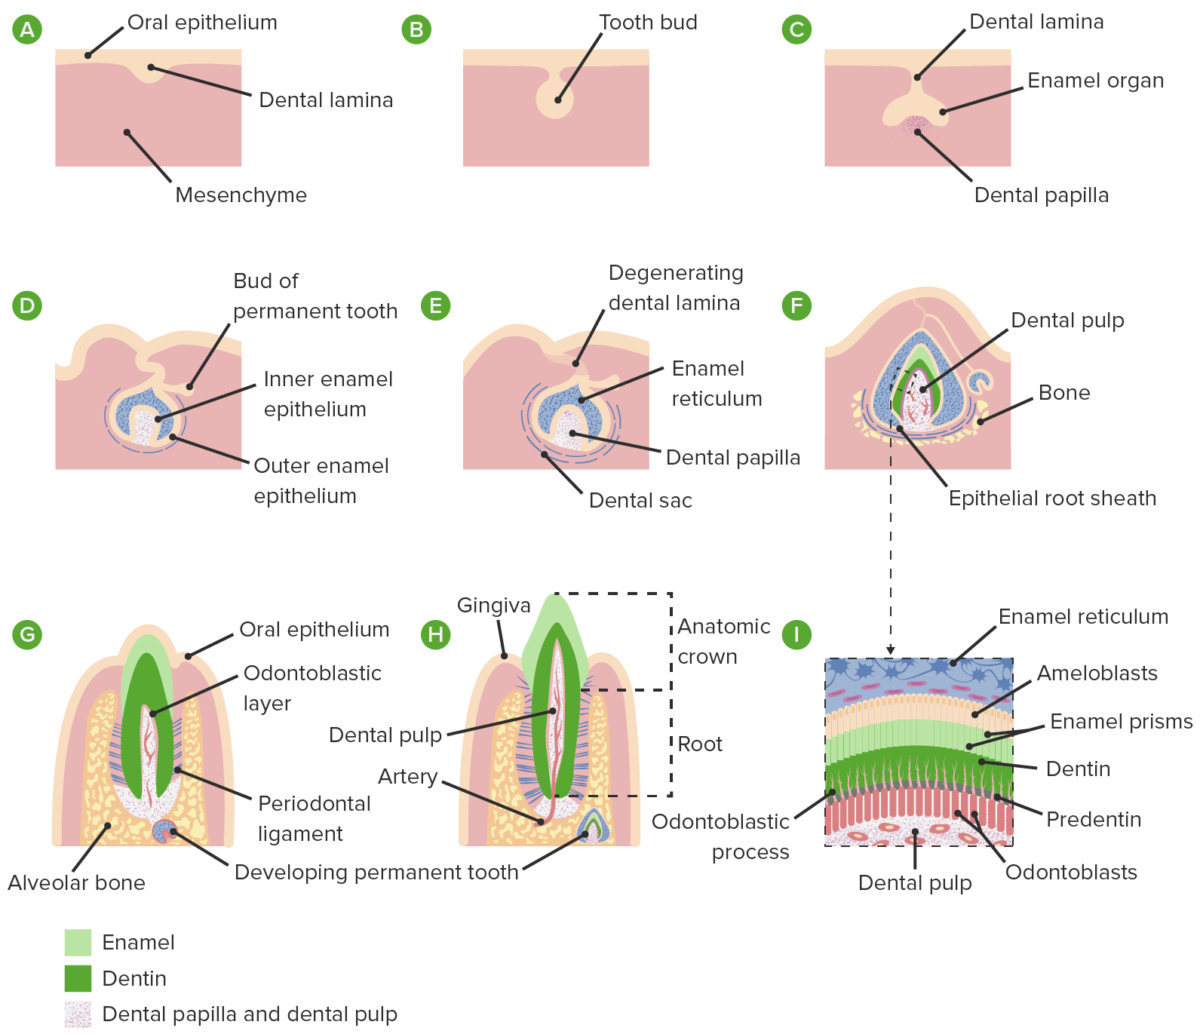 Formação da papila dentária e do saco dentário